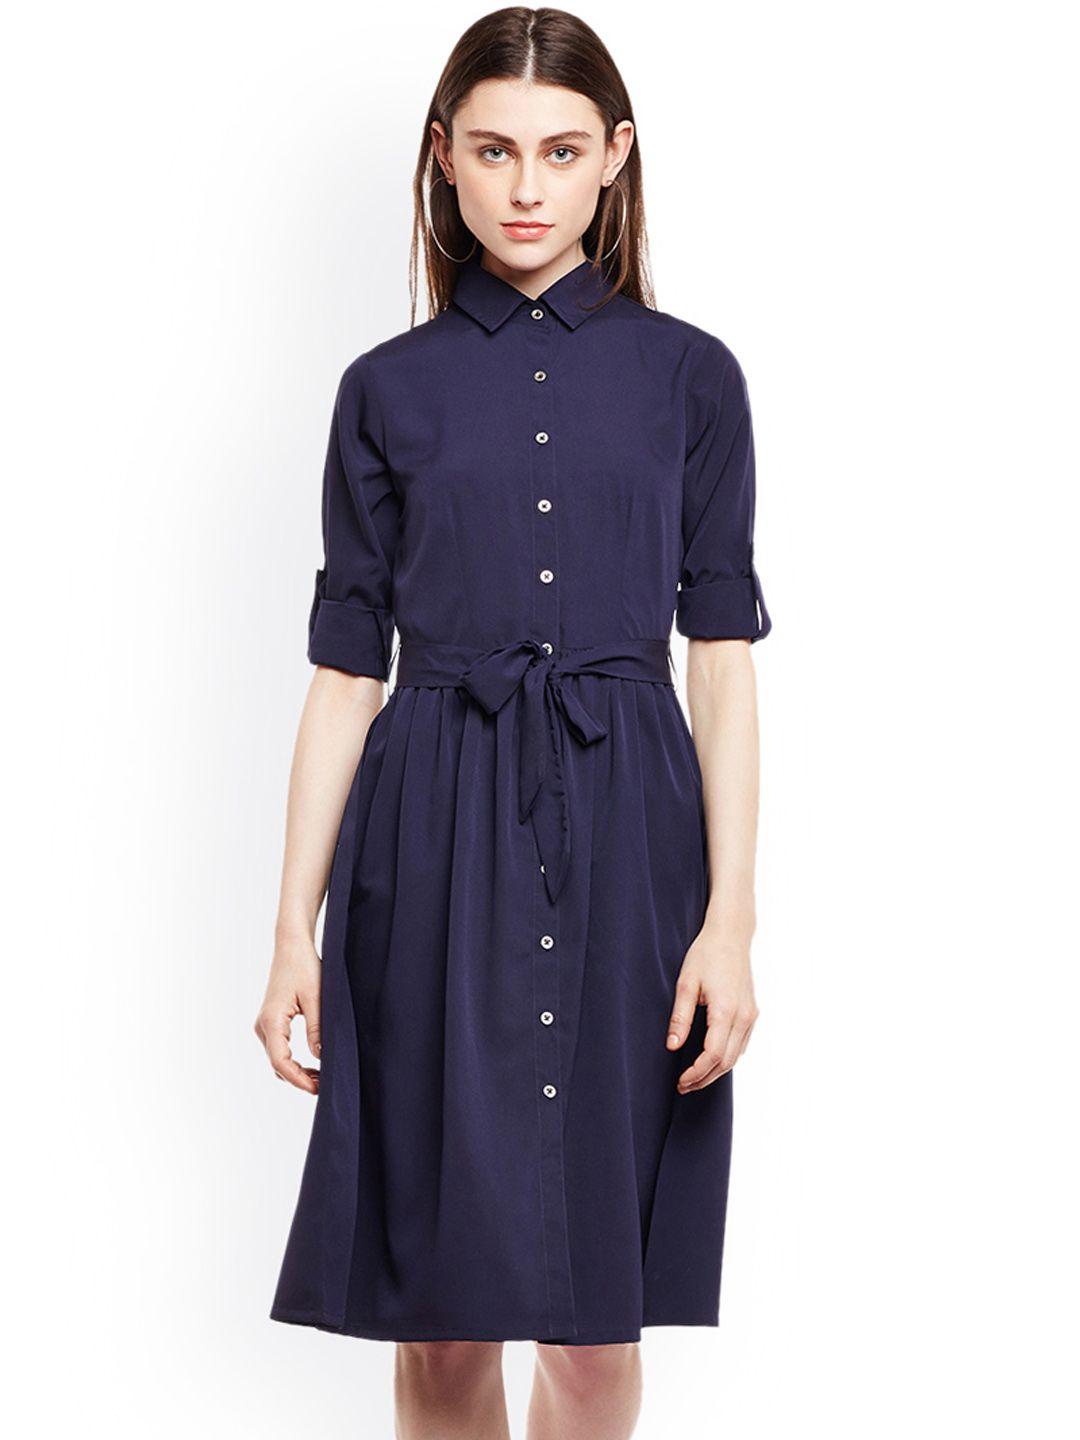 wisstler women navy blue solid shirt dress